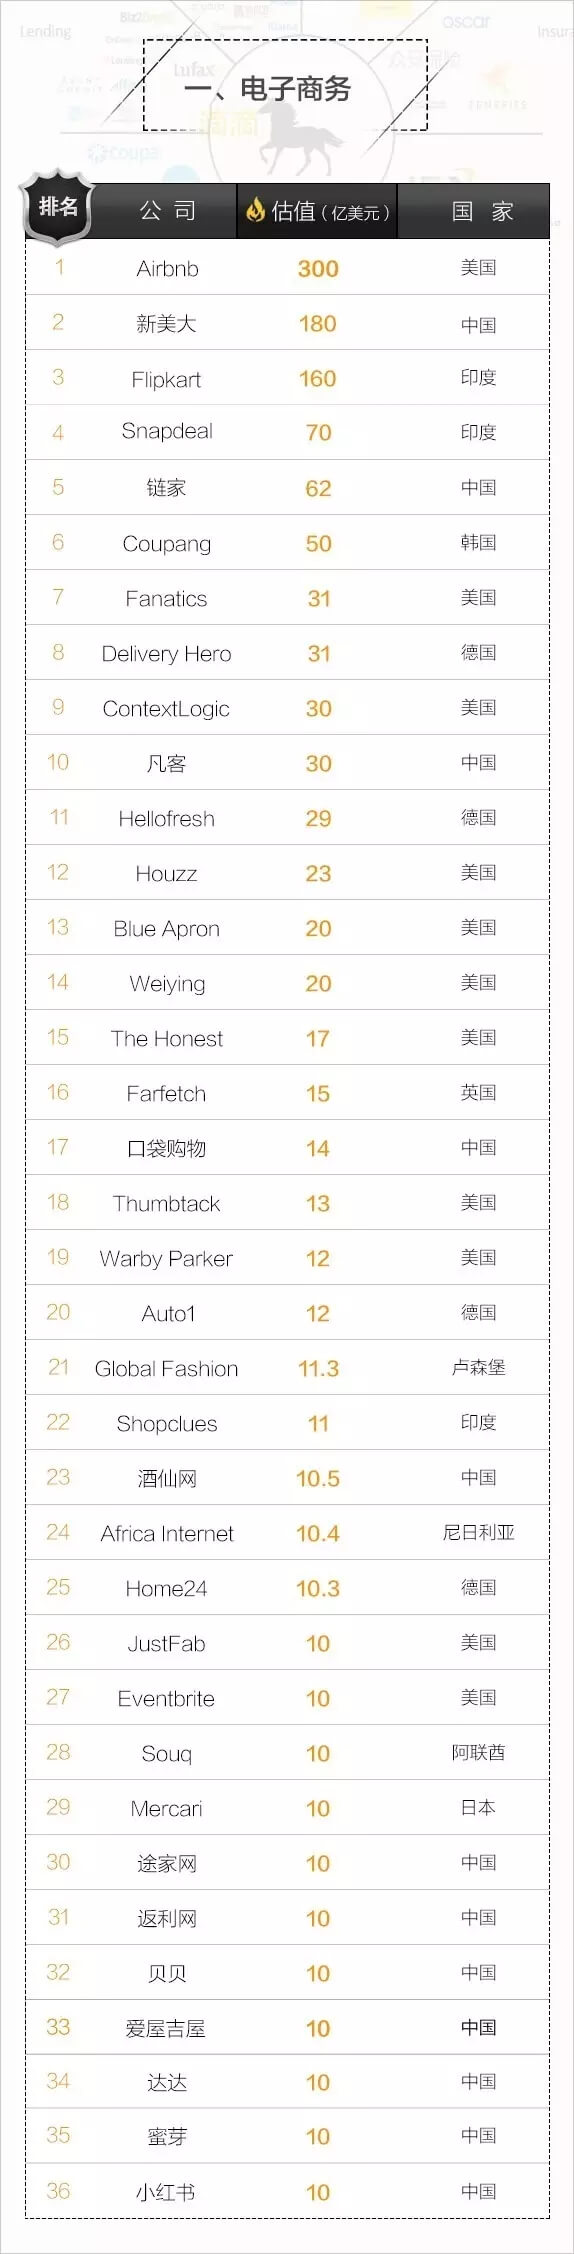 重磅！全球最新独角兽榜单出炉，中国哪些公司上榜了？